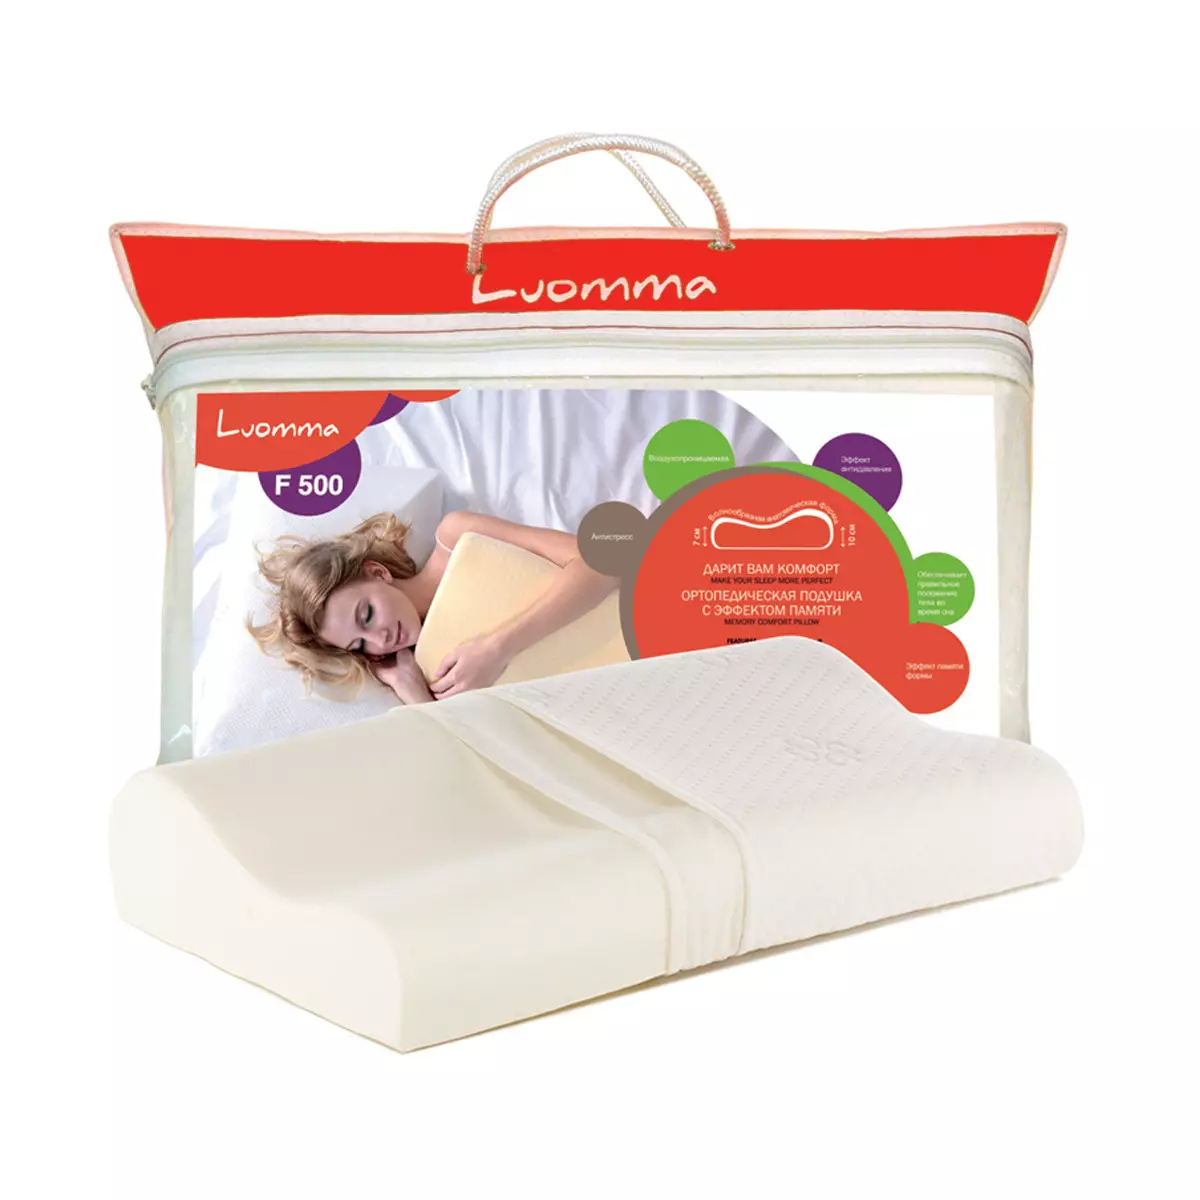 LUOMMA Pillows: Efekt ortopedyczny i pamięci, poduszki dla dzieci z Finlandii dla noworodków i starszych dzieci, recenzje 20745_5